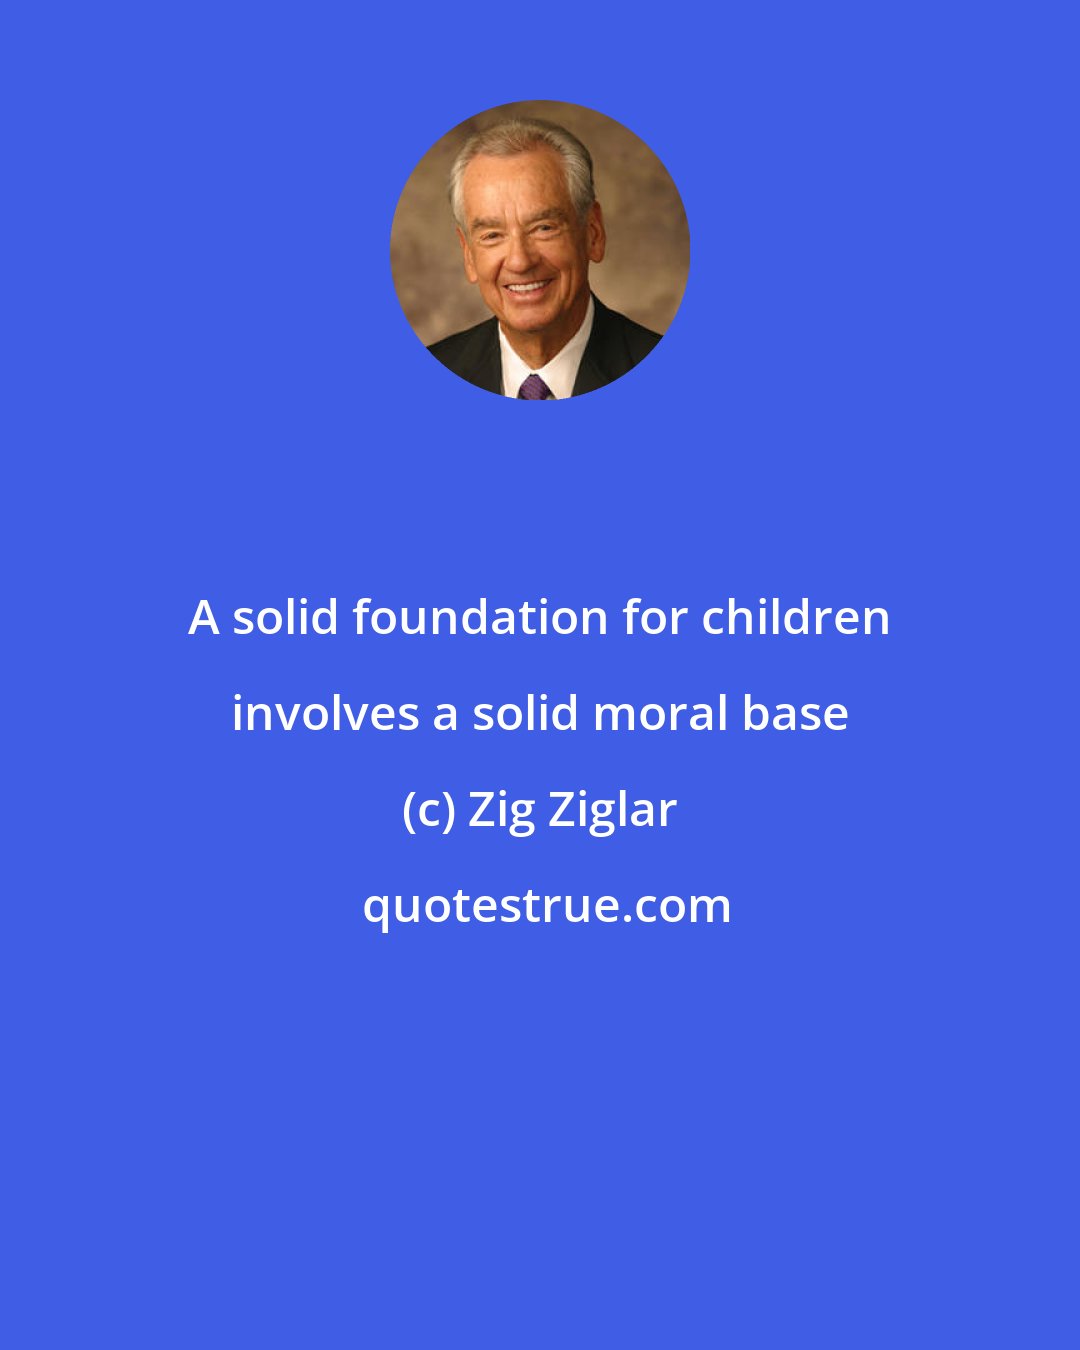 Zig Ziglar: A solid foundation for children involves a solid moral base